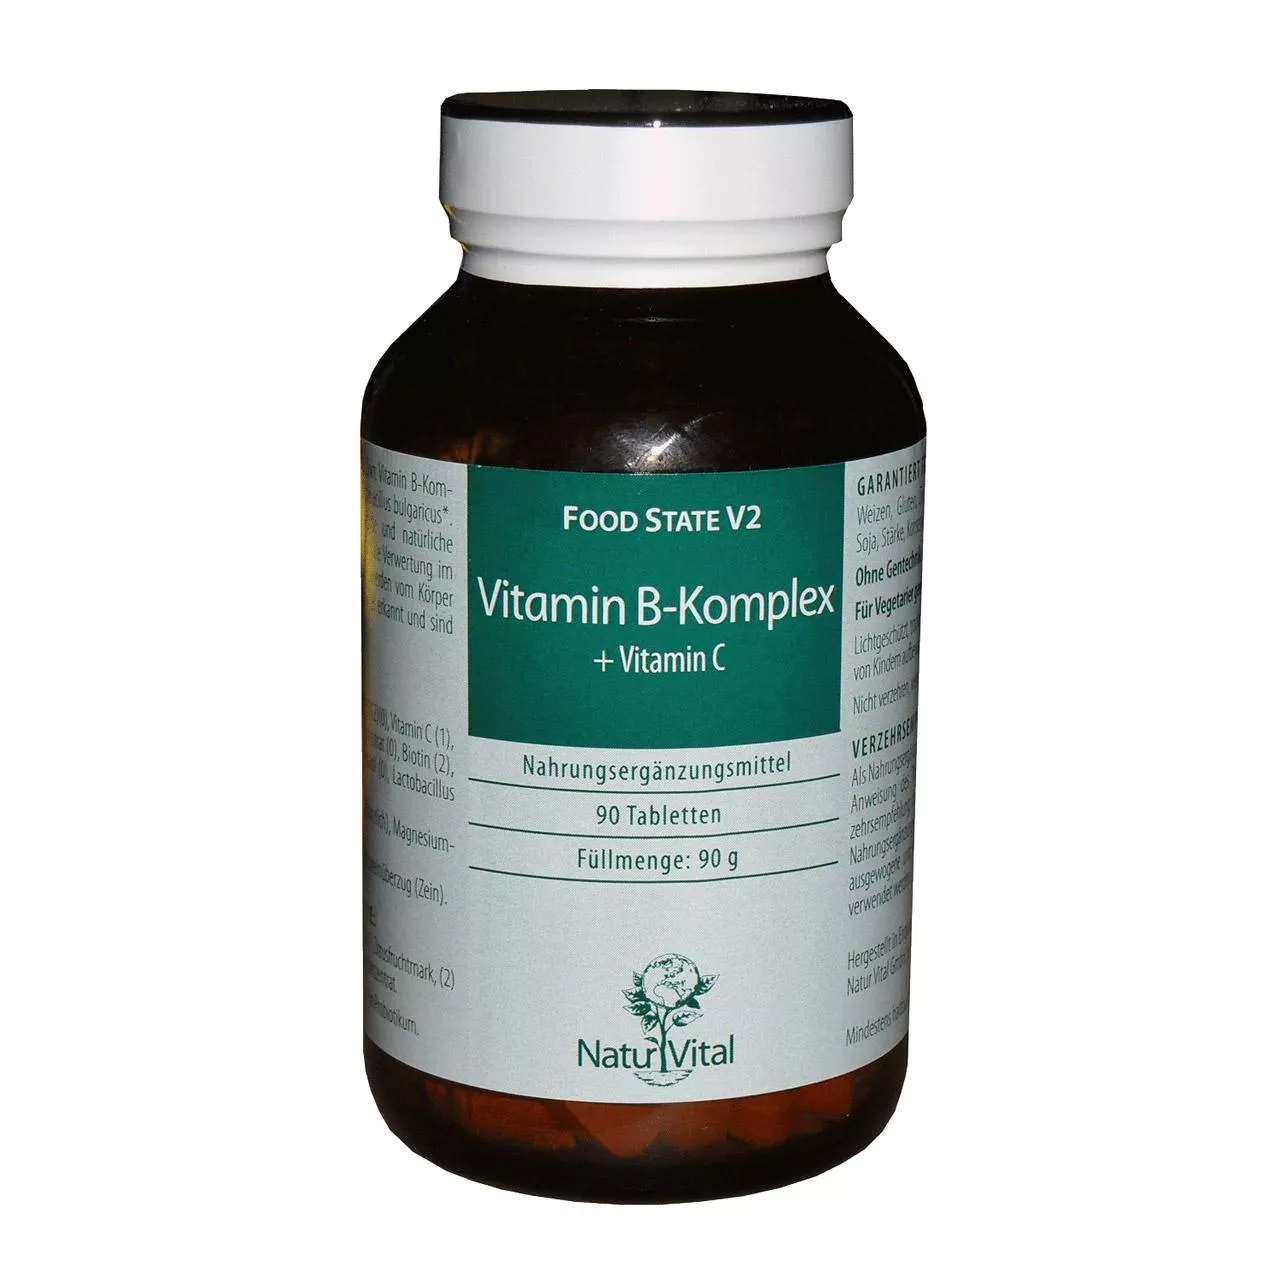 Vitamin B Komplex + Vitamin C von Natur Vital beinhaltet 90 Tabletten